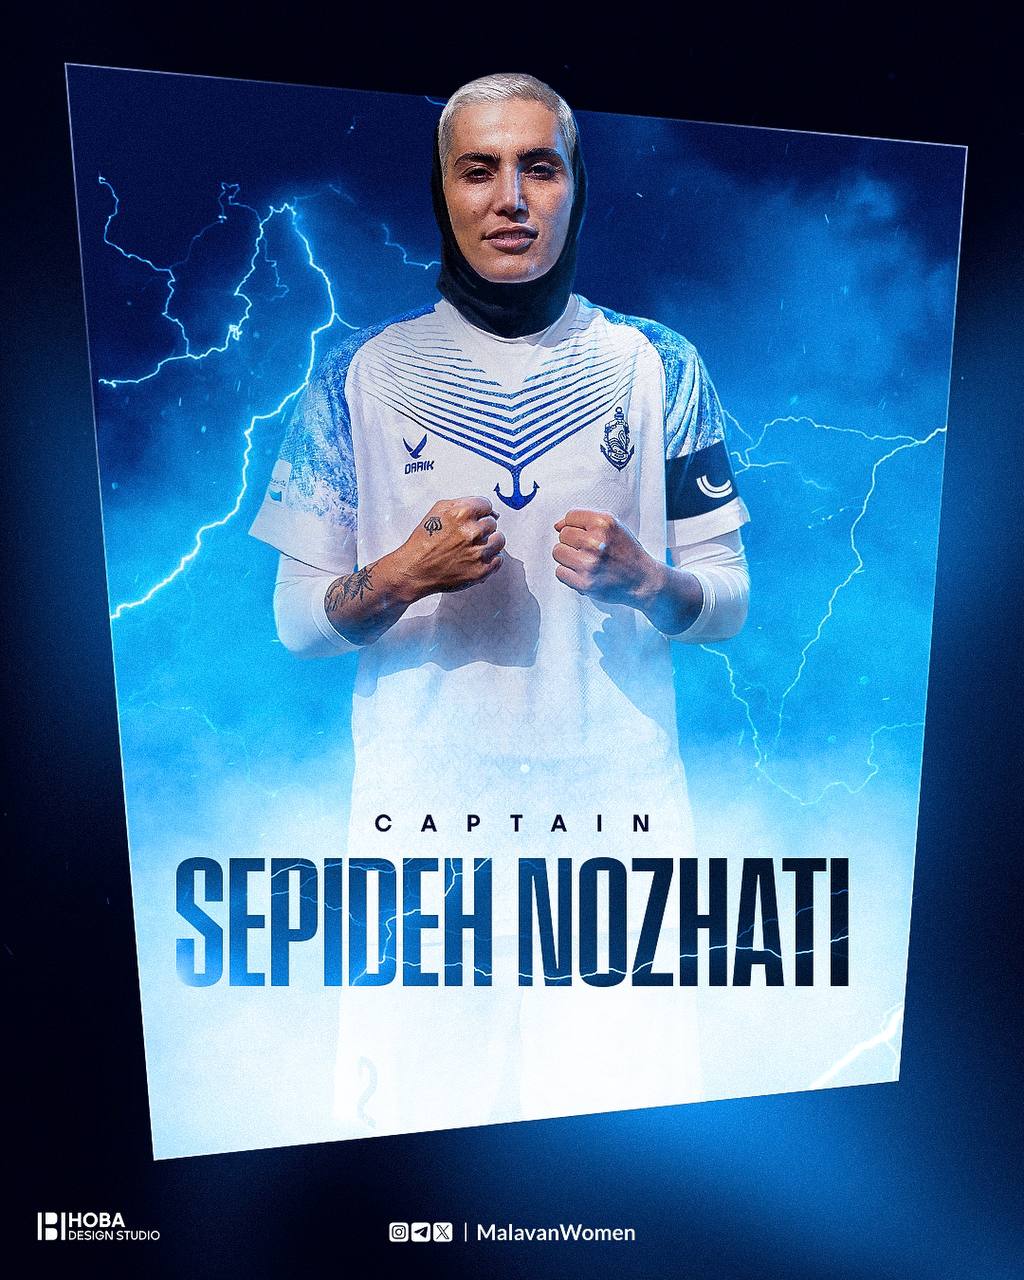 سپیده نزهتی به عنوان کاپیتان این فصل تیم بانوان ملوان معرفی شد